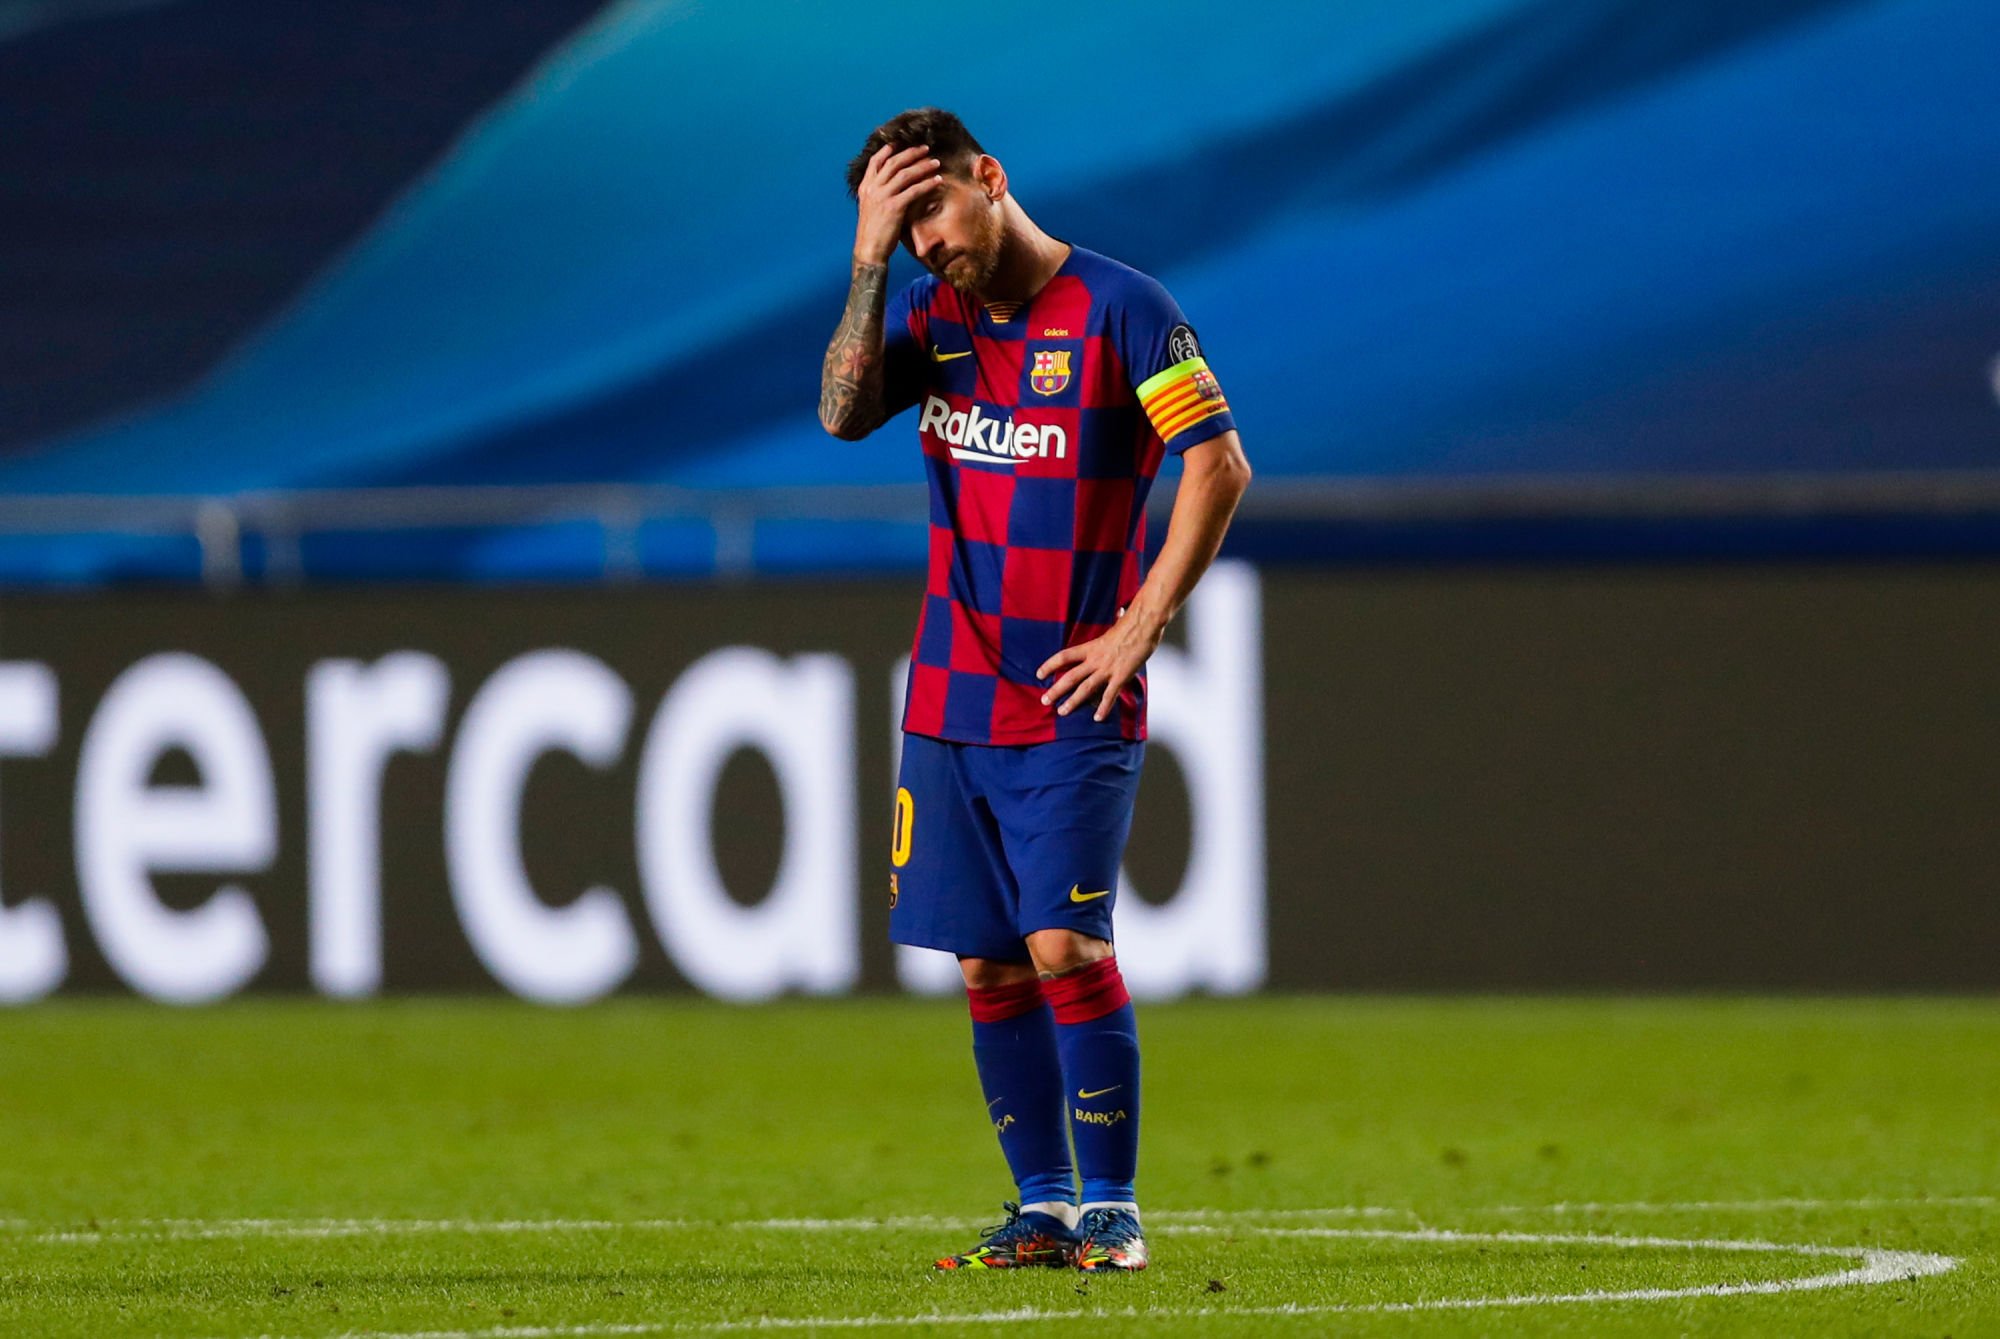 Lionel Messi FC Barcelone